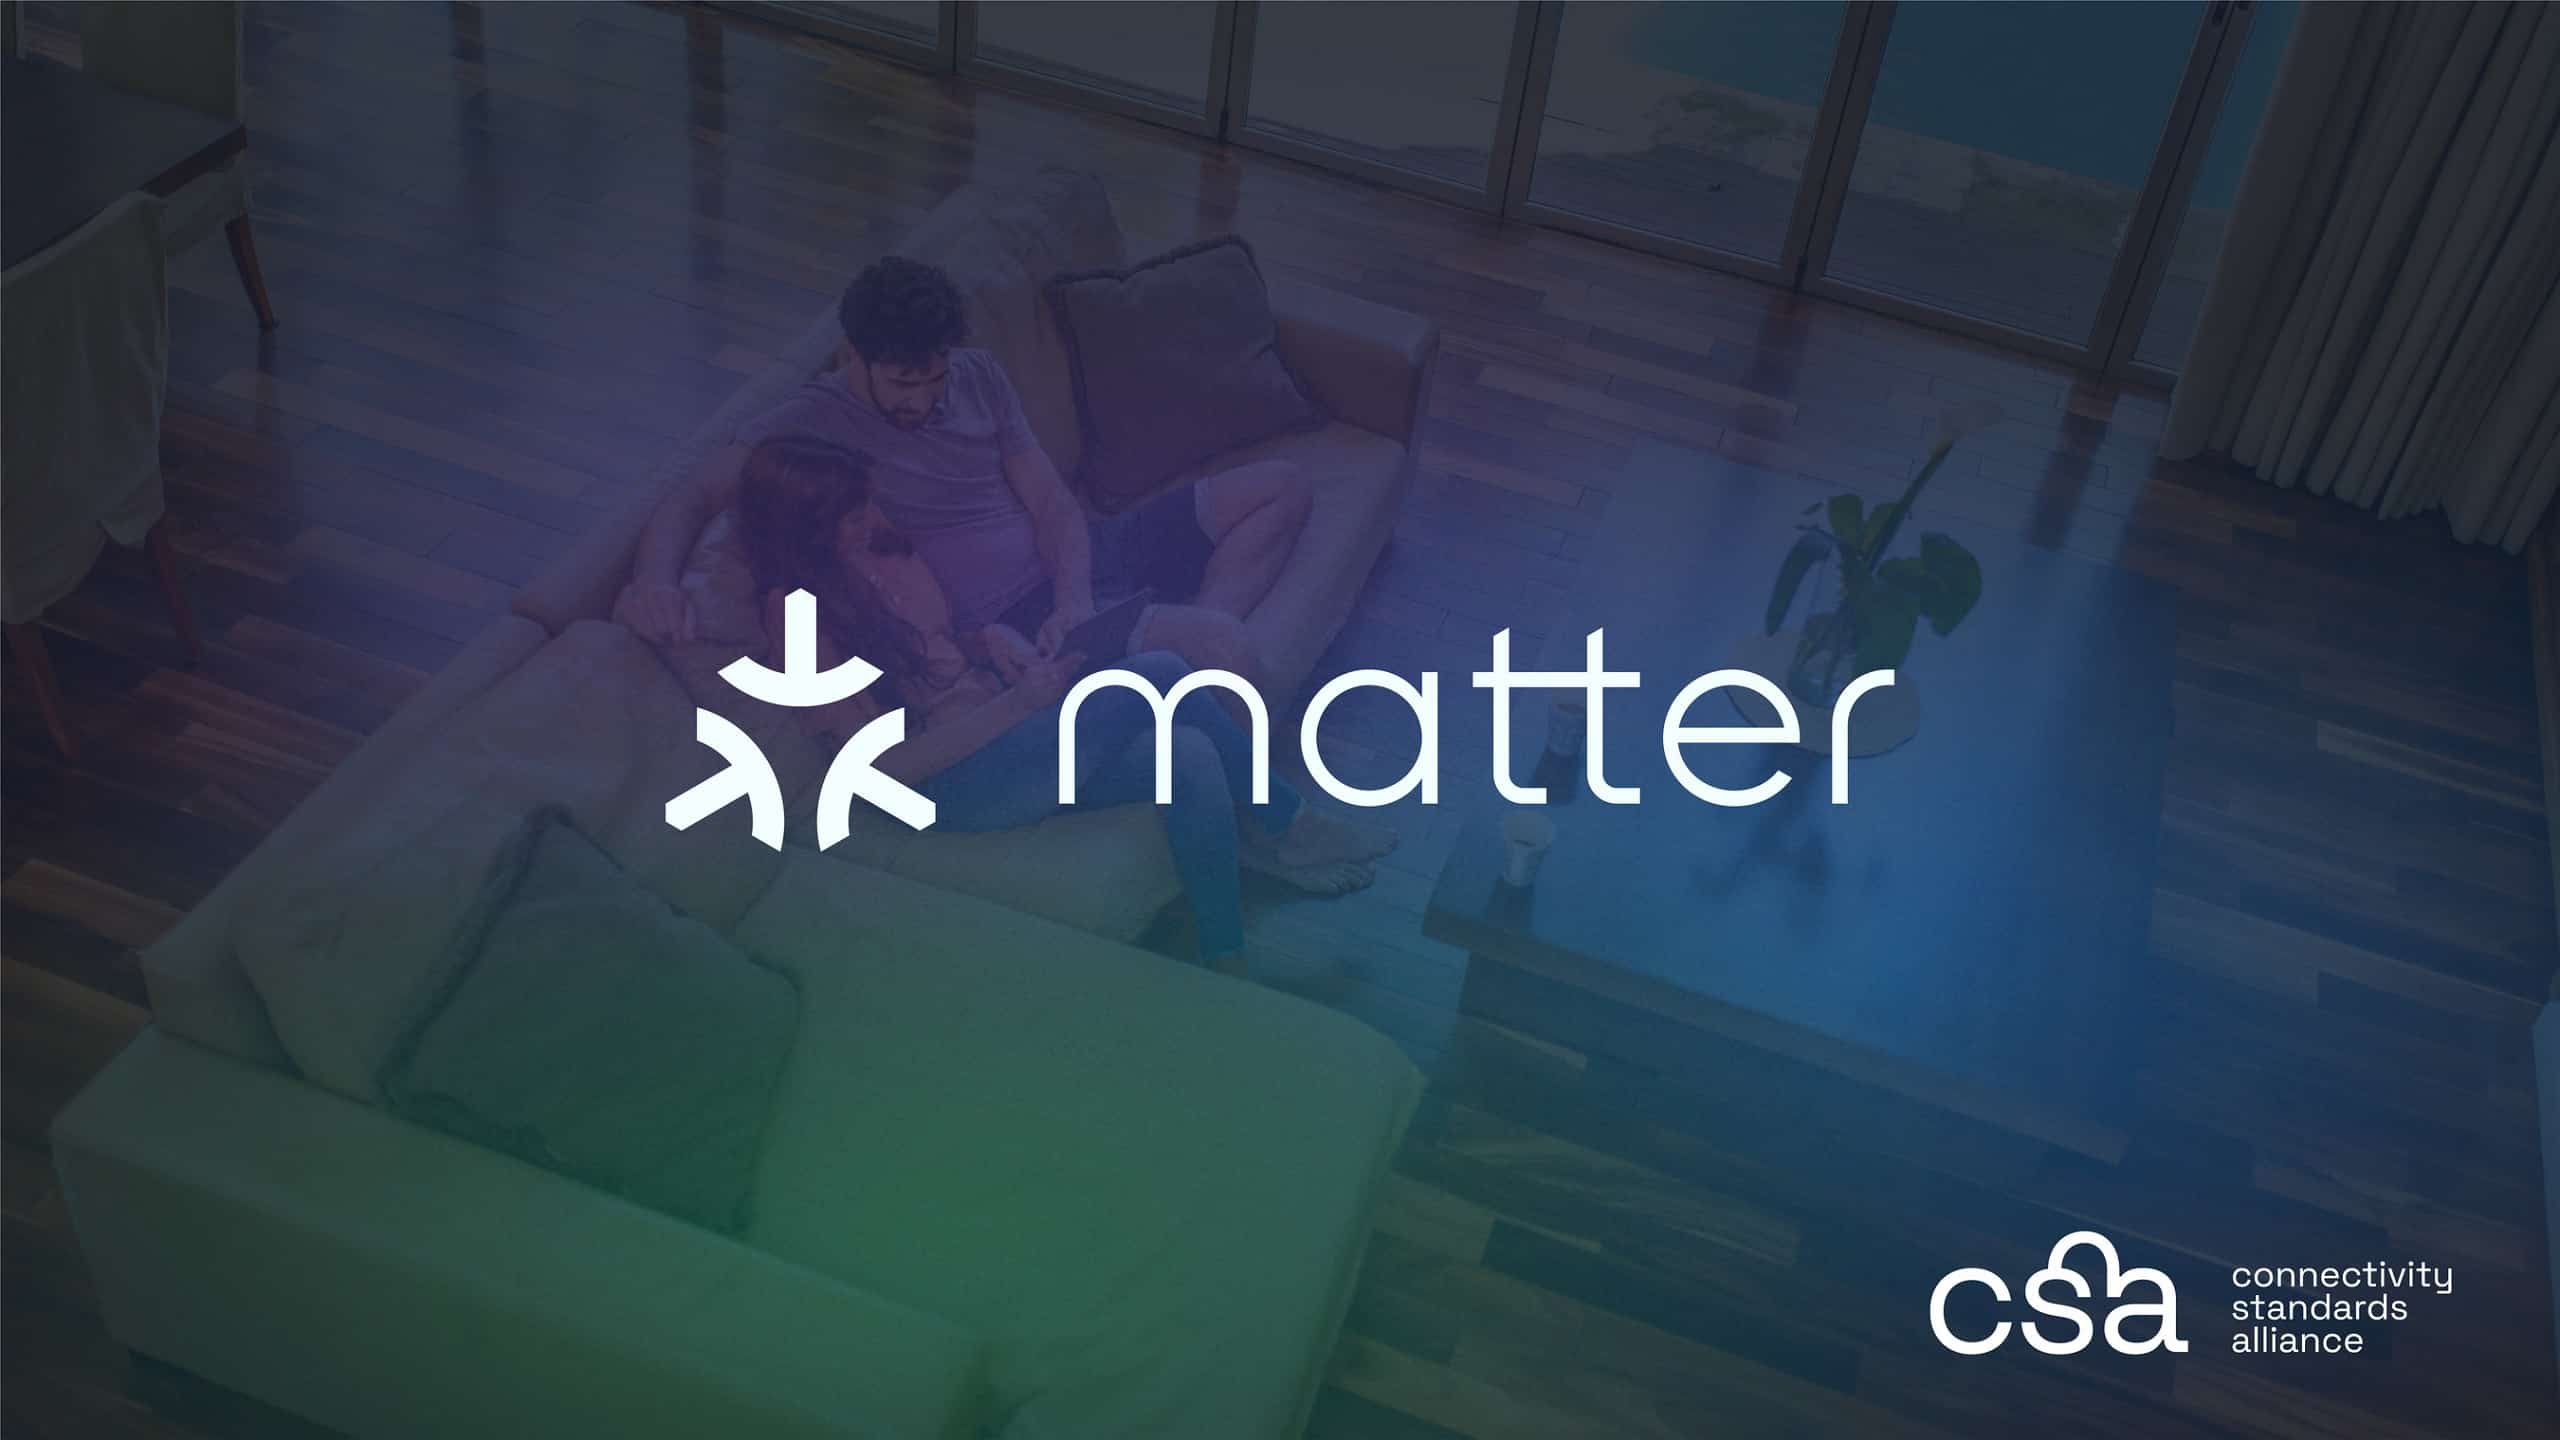 Matter 1.3 bietet Unterstützung für neue Geräte, Ladegeräte für Elektrofahrzeuge und mehr